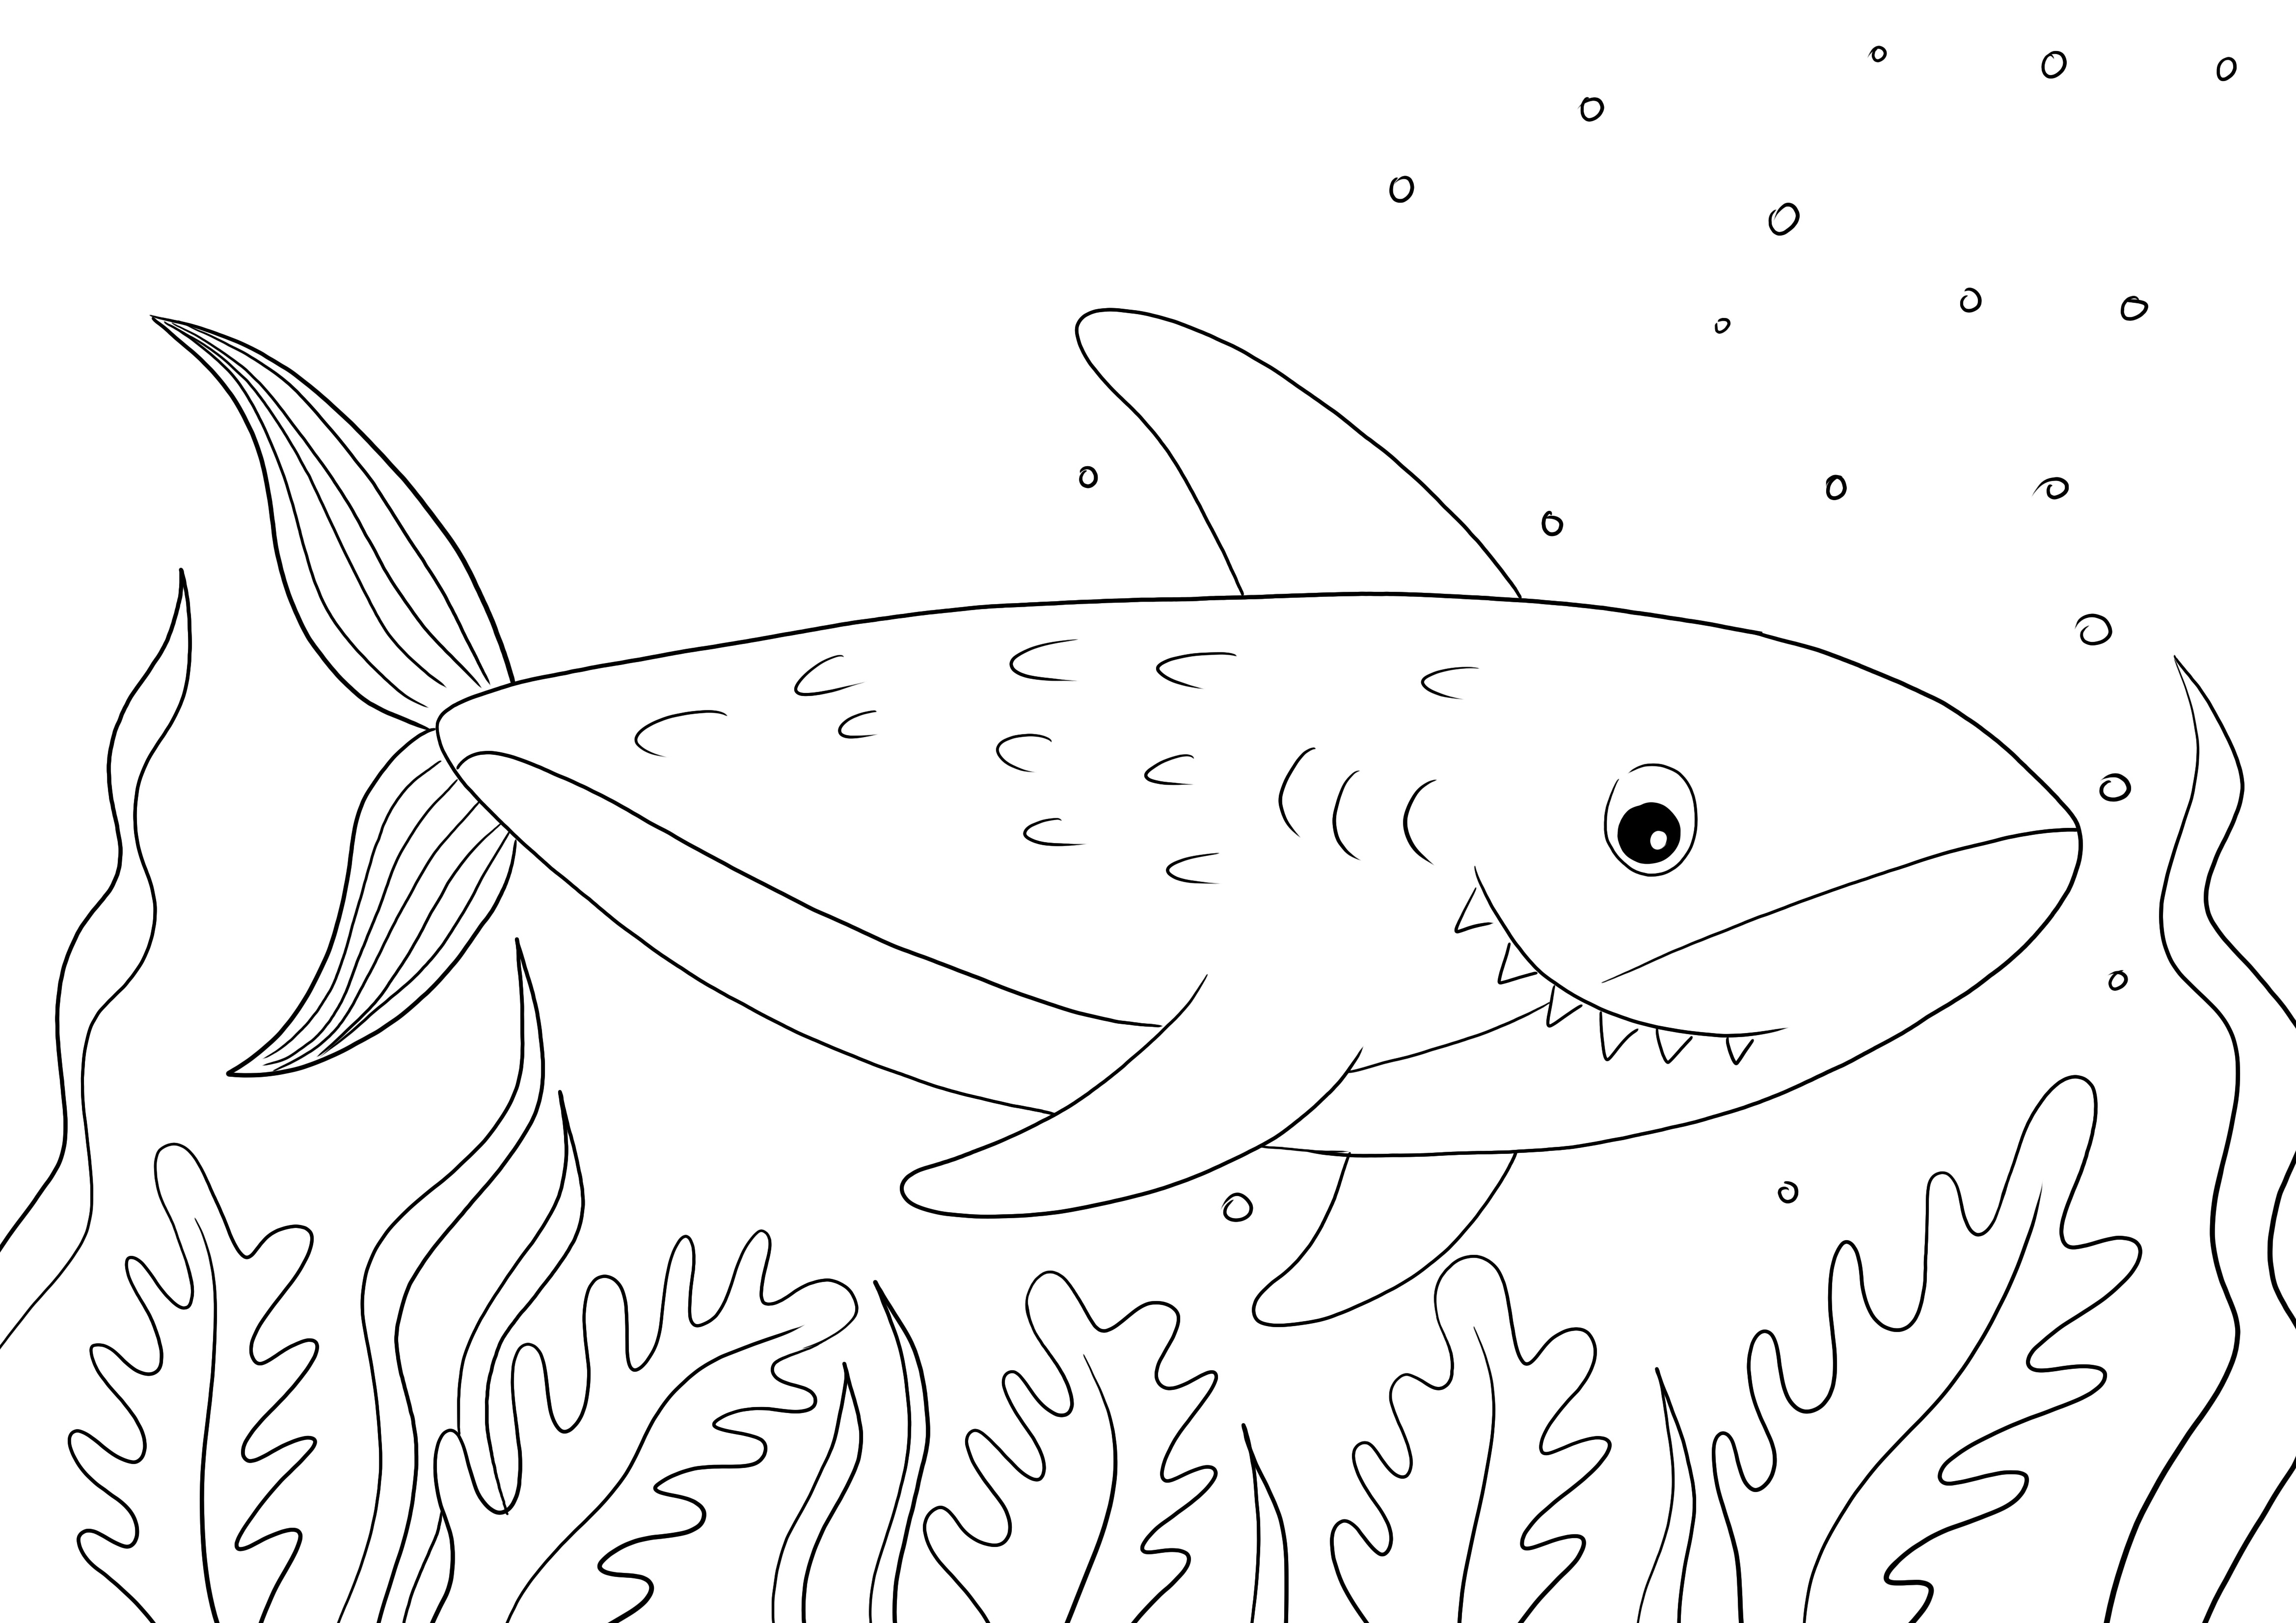 Impression facile et gratuite d'un coloriage de requin pour que les enfants apprennent à connaître les animaux marins